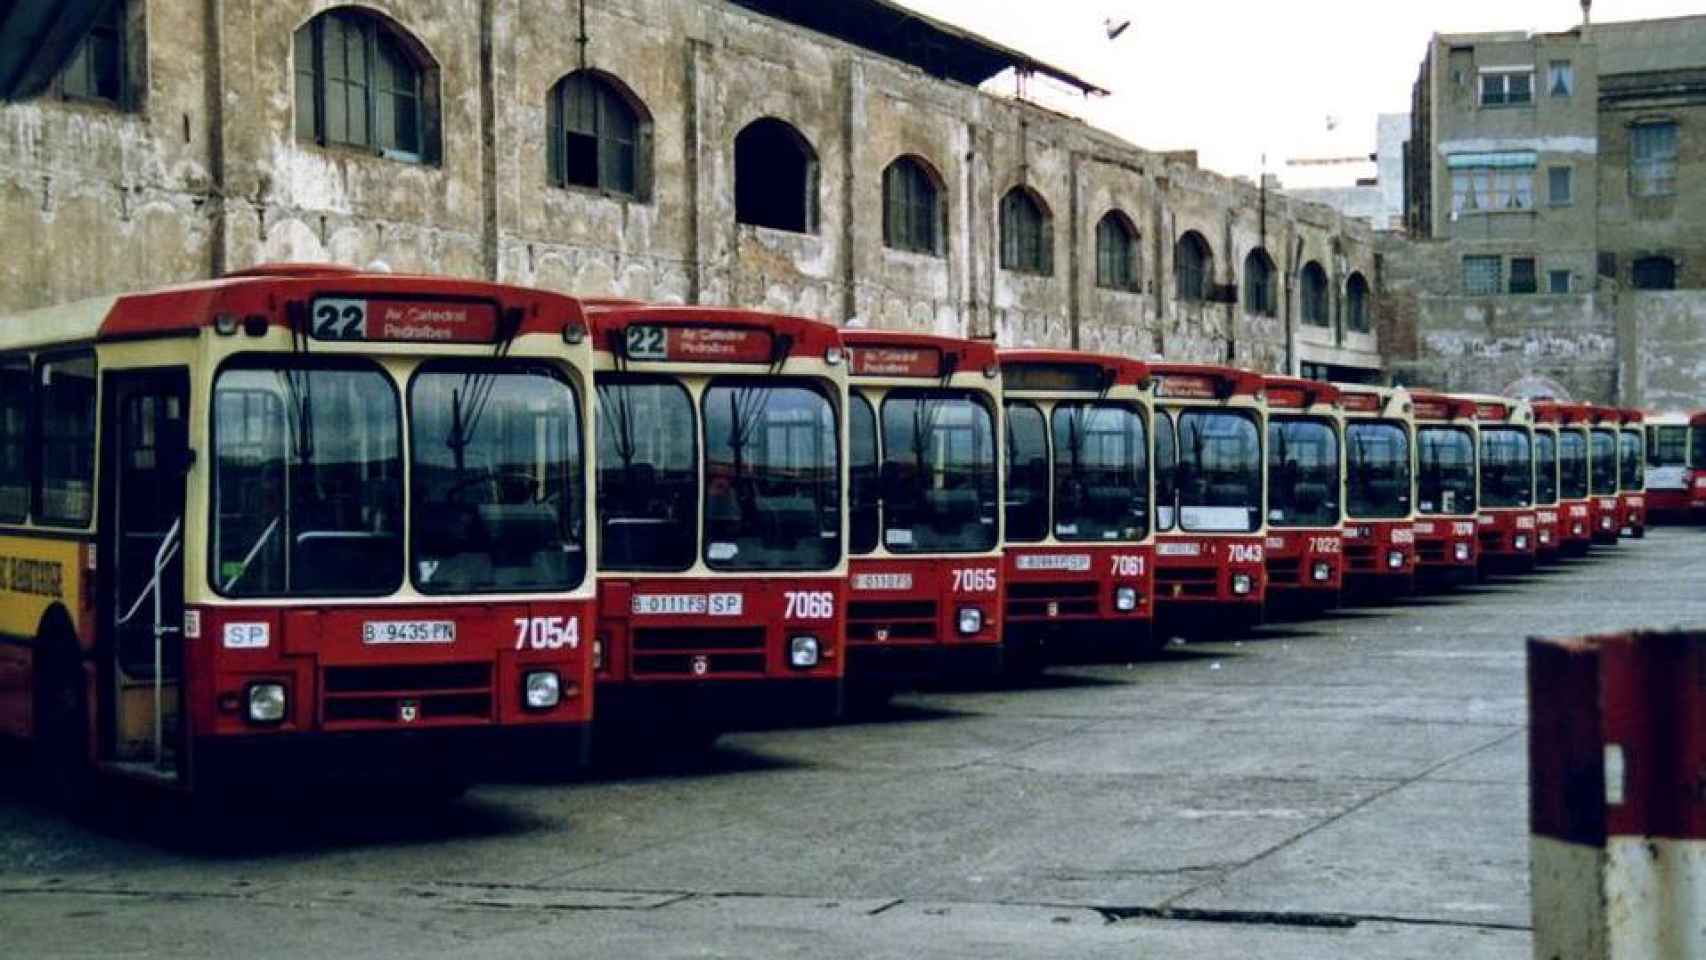 Autobuses de Barcelona en los años 80.